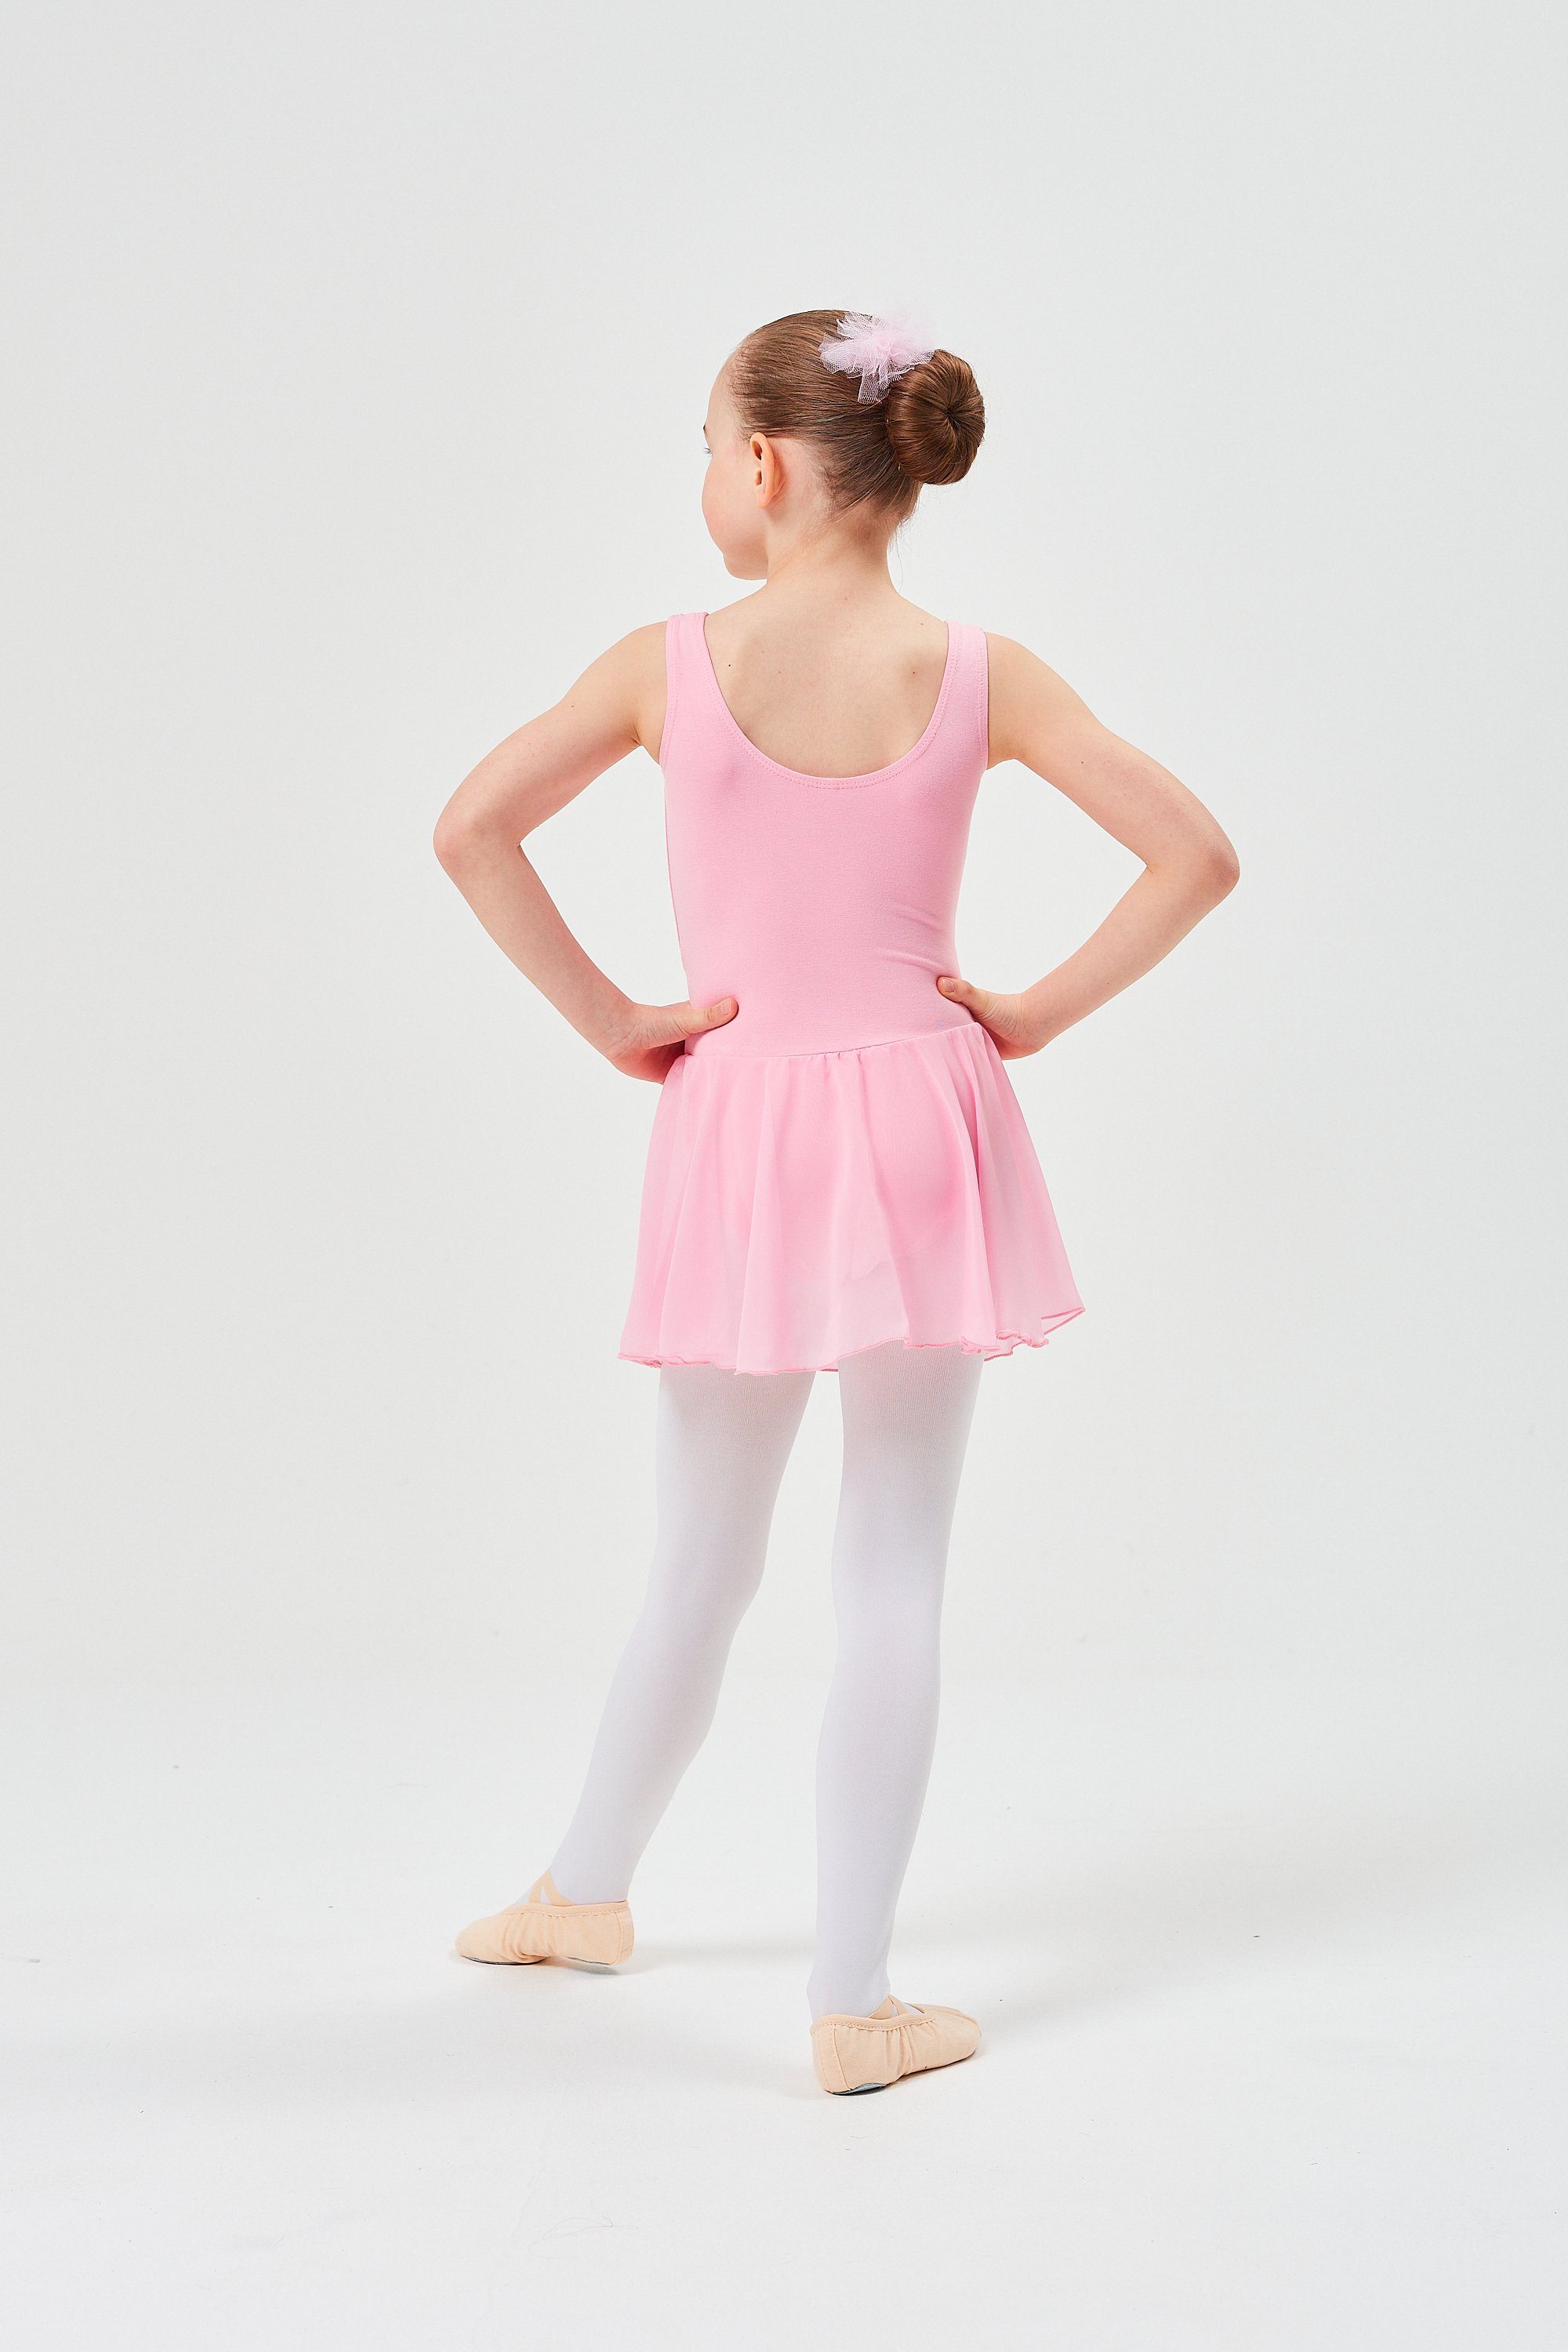 tanzmuster Chiffonkleid Ballett mit weichem Röckchen wunderbar Mädchen Trikot Minnie Baumwollmaterial aus für rosa Ballettkleid Chiffon